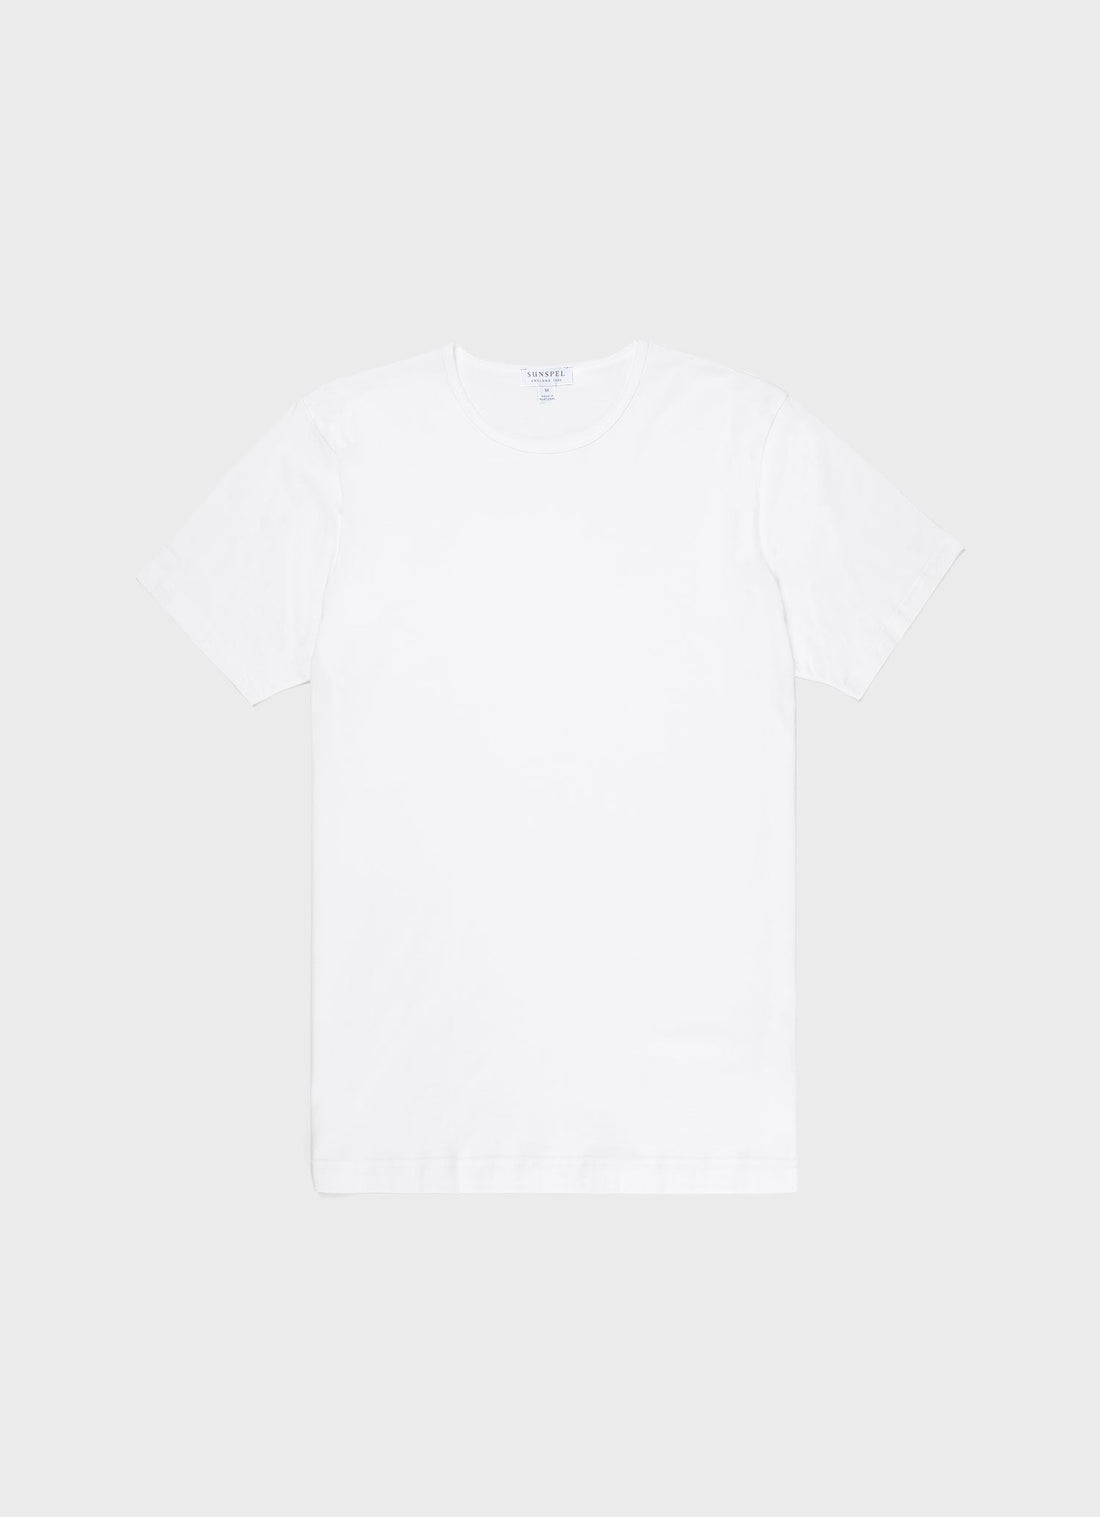 Men's Superfine Underwear T-shirt in White